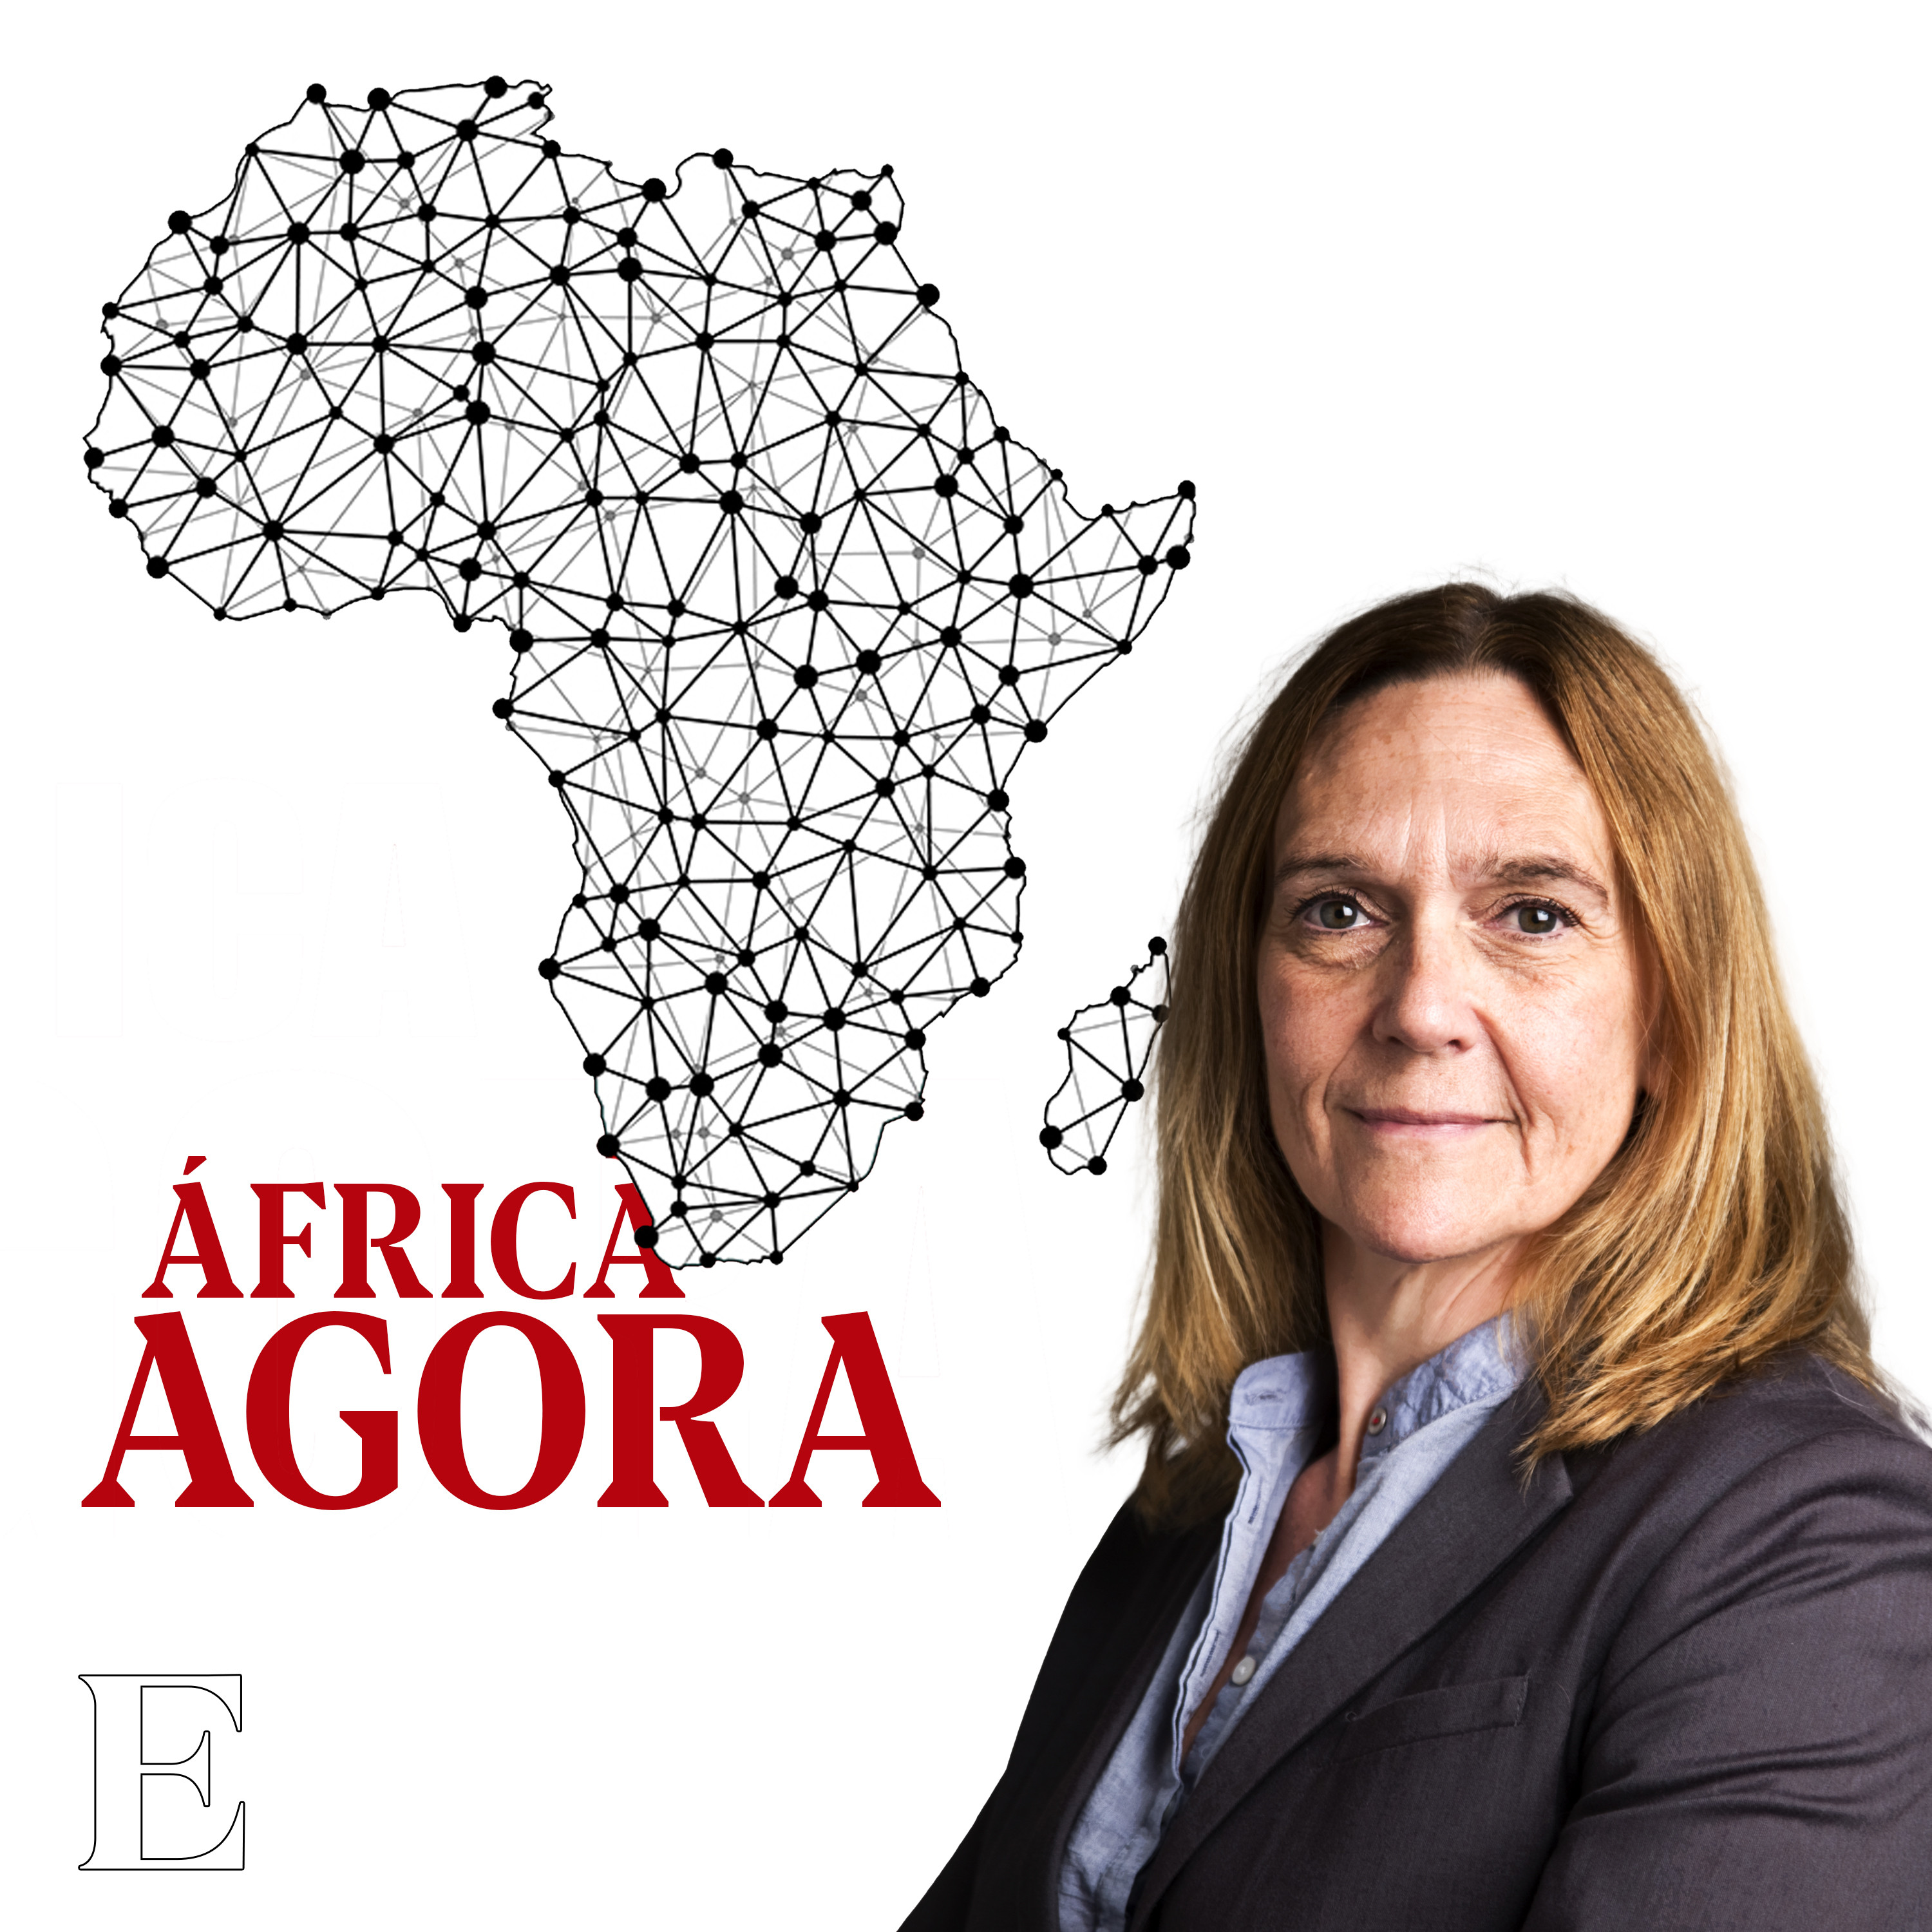 B.Leza, embaixada de África em Lisboa: “Aqui até os feios são bonitos”